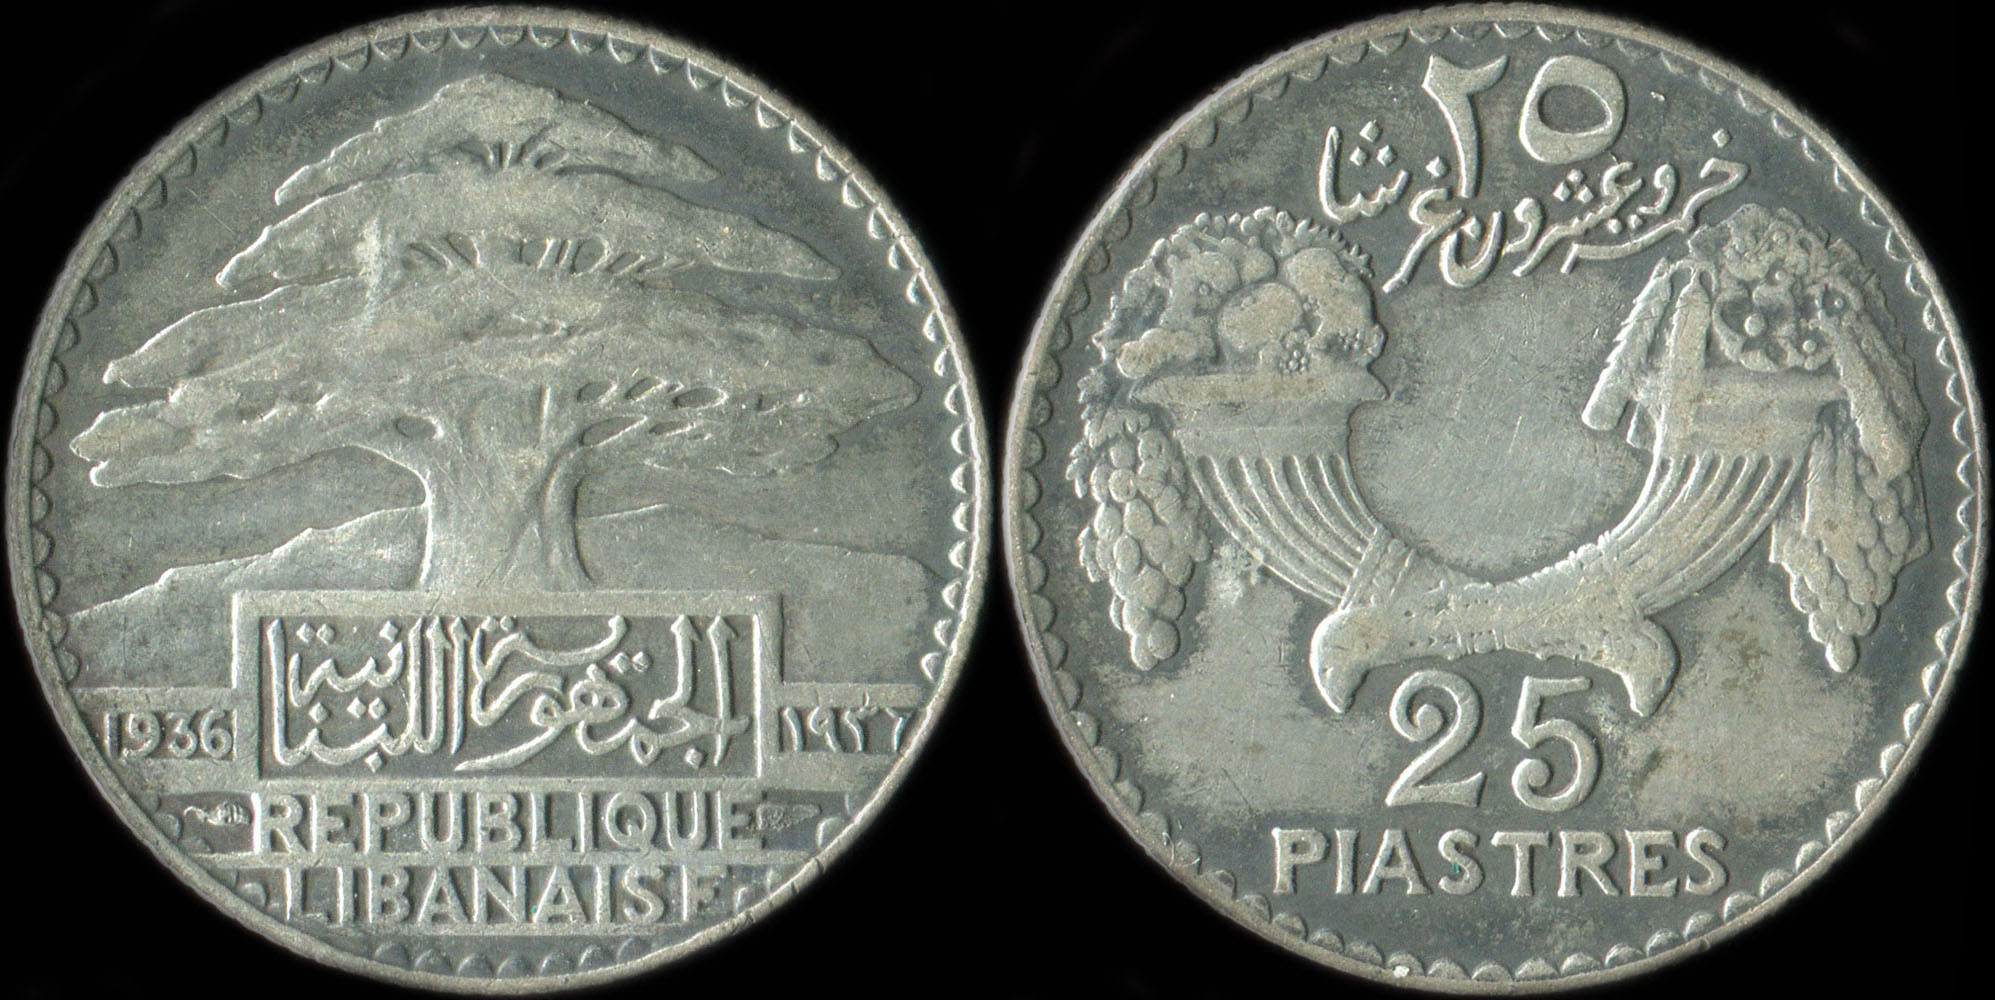 Pièce de 25 piastres 1936 - République Libanaise